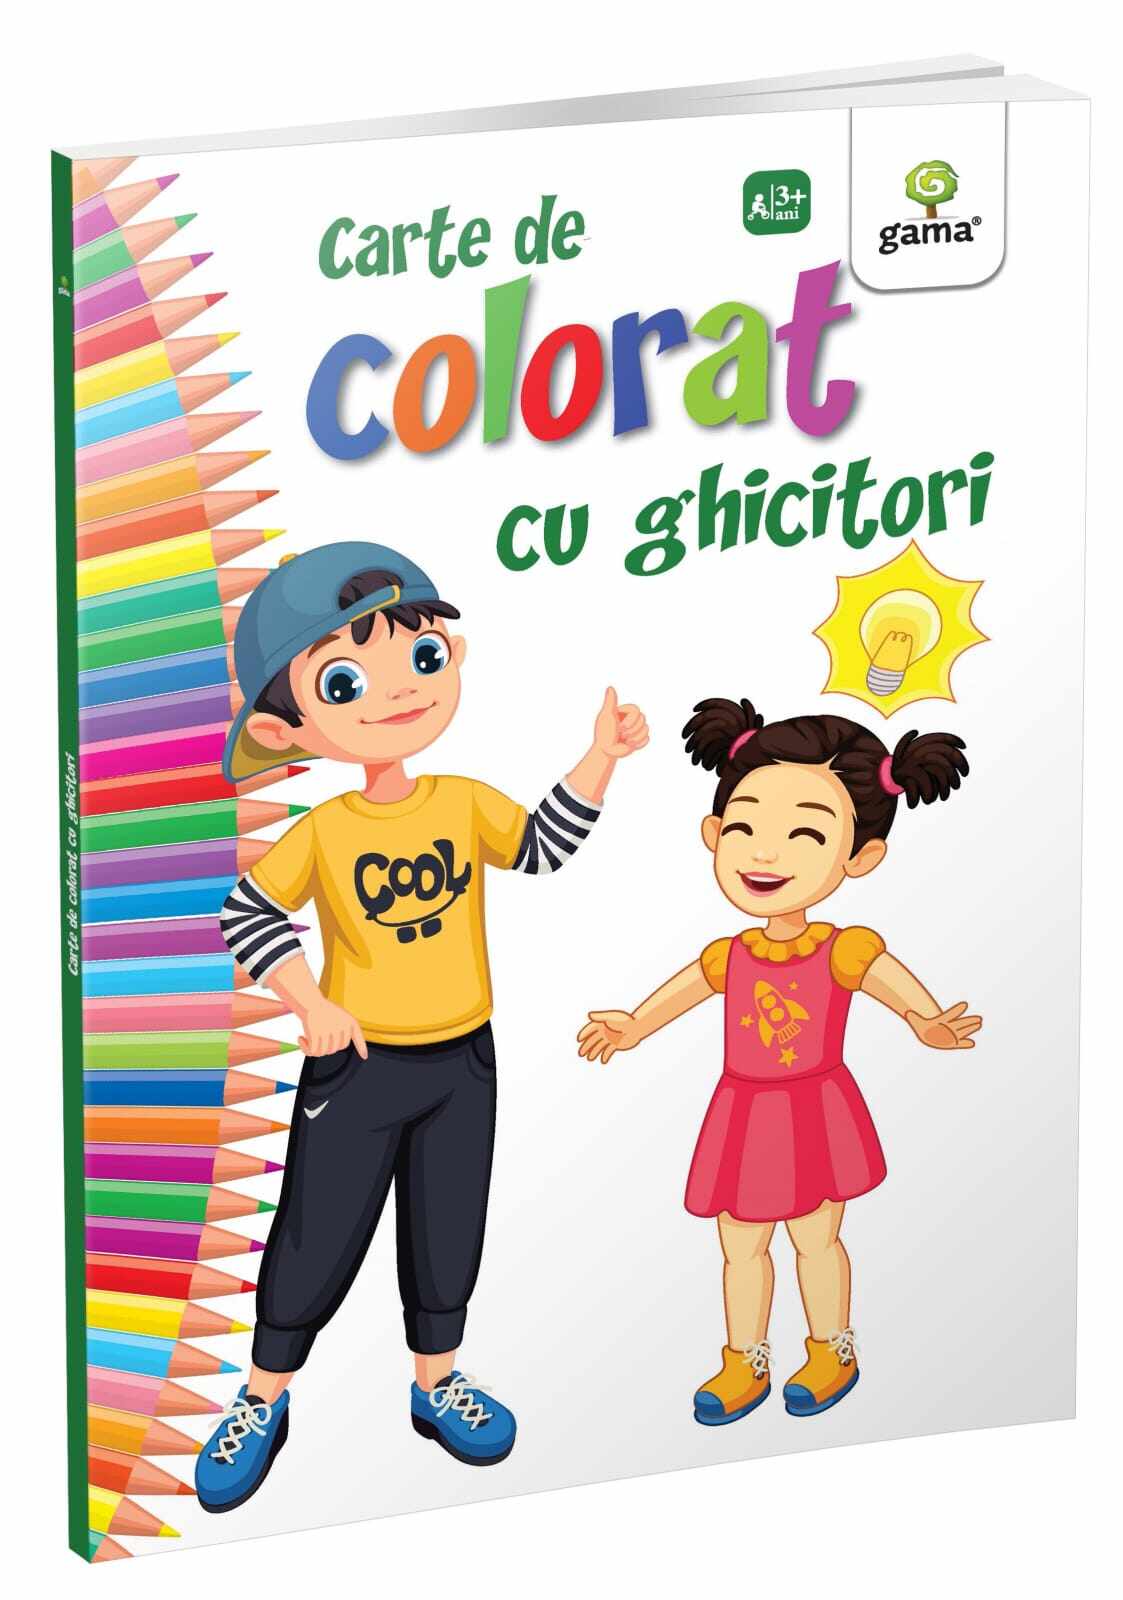 Carte de colorat cu ghicitori - Editia 2018, Editura Gama, 2-3 ani +